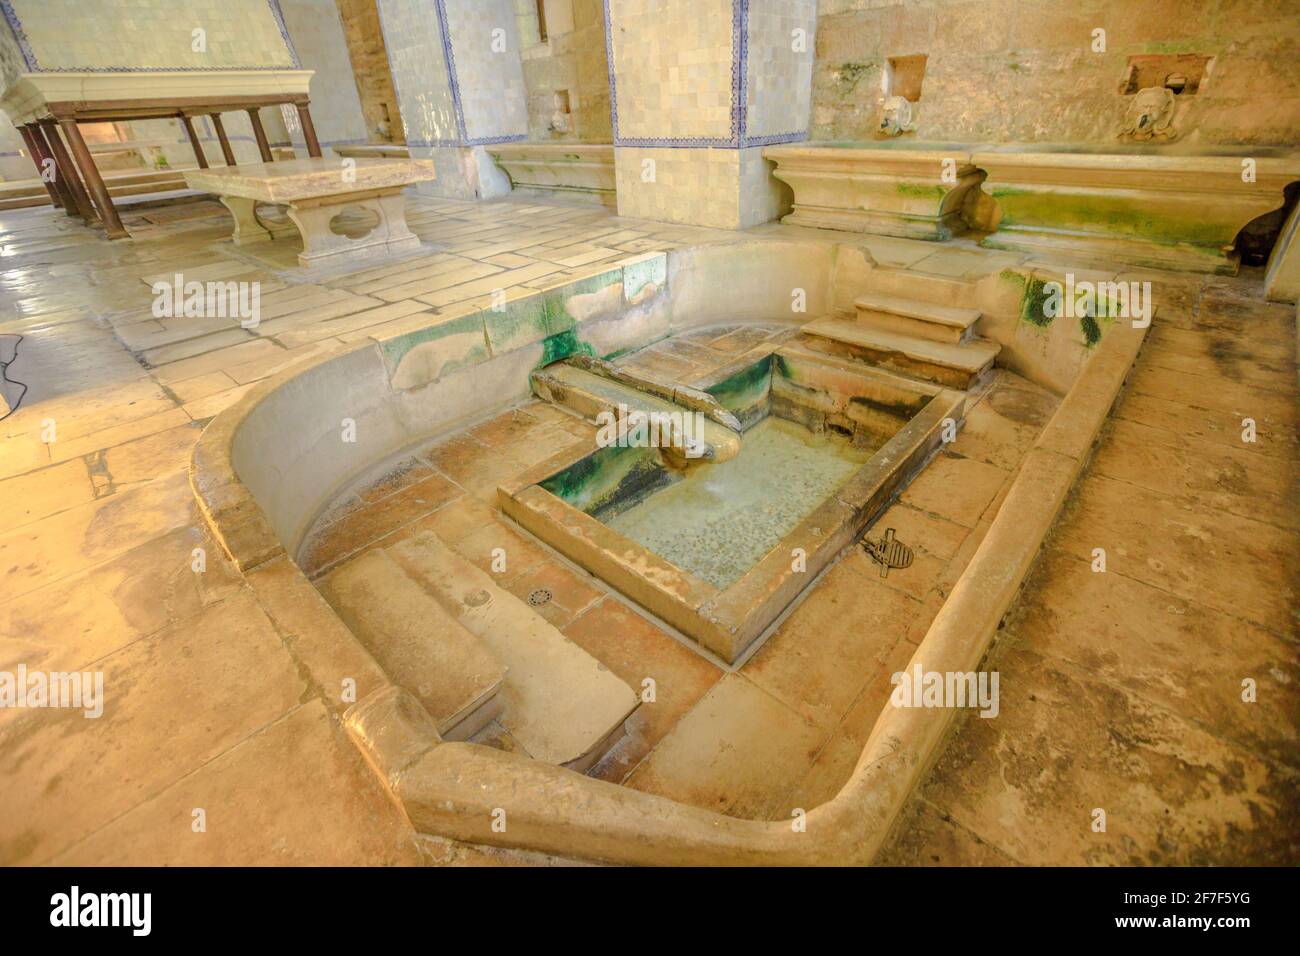 Alcobaca, Portugal - 15. August 2017: Der Pool in einem gotischen Raum im Kloster von Alcobaca. Unesco-Weltkulturerbe. Architekturhintergrund. Berühmter Ort Stockfoto